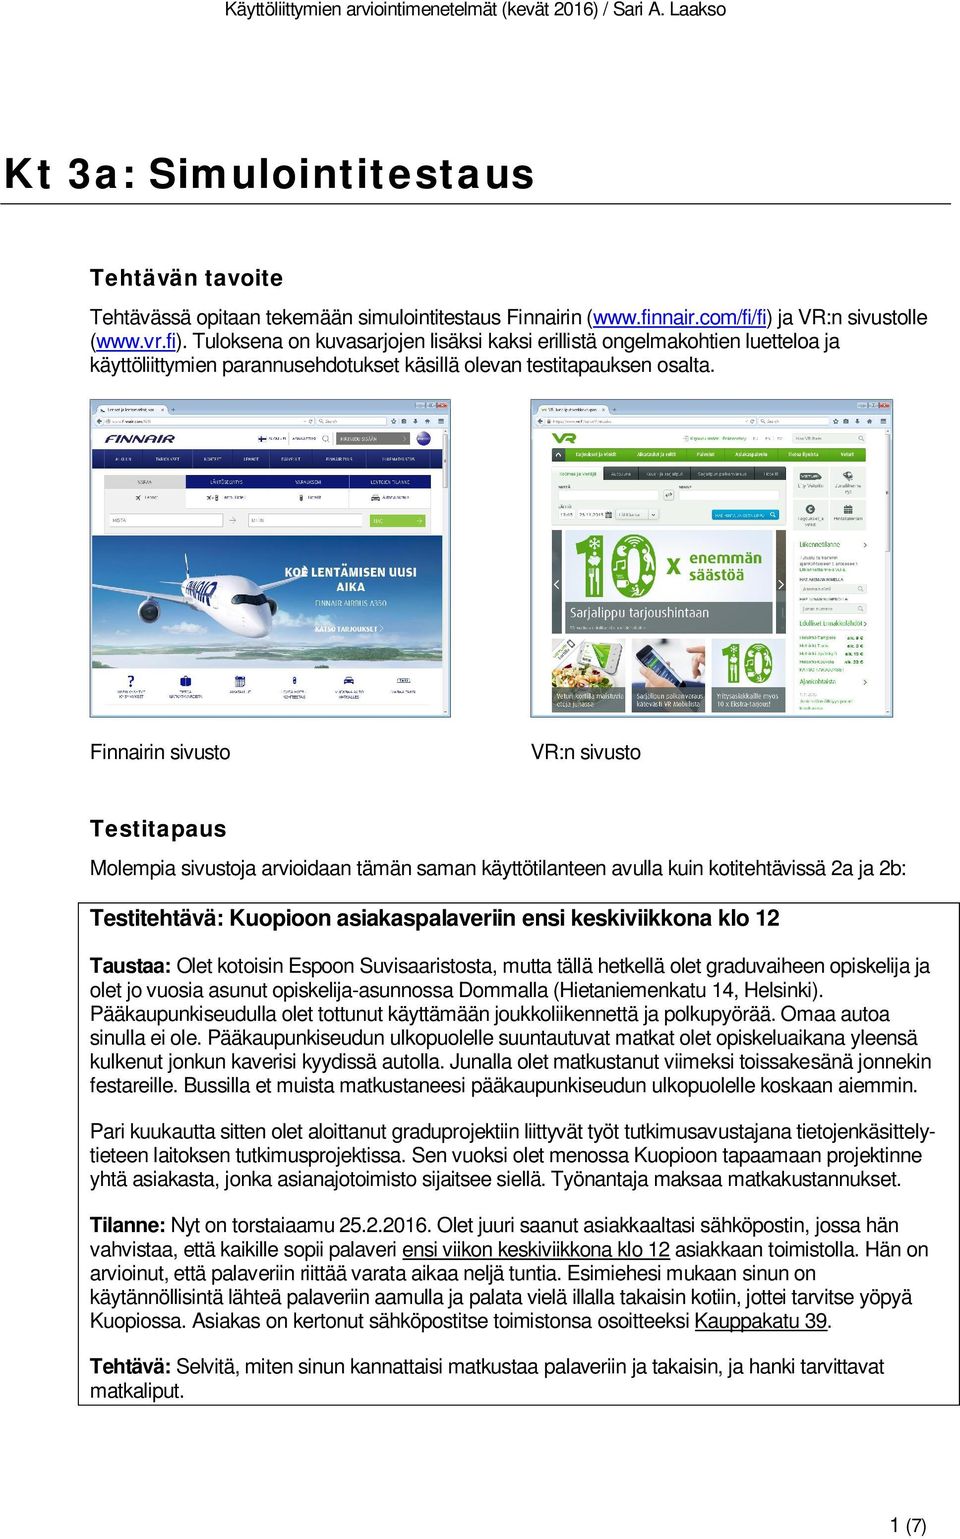 Finnairin sivusto VR:n sivusto Testitapaus Molempia sivustoja arvioidaan tämän saman käyttötilanteen avulla kuin kotitehtävissä 2a ja 2b: Testitehtävä: Kuopioon asiakaspalaveriin ensi keskiviikkona